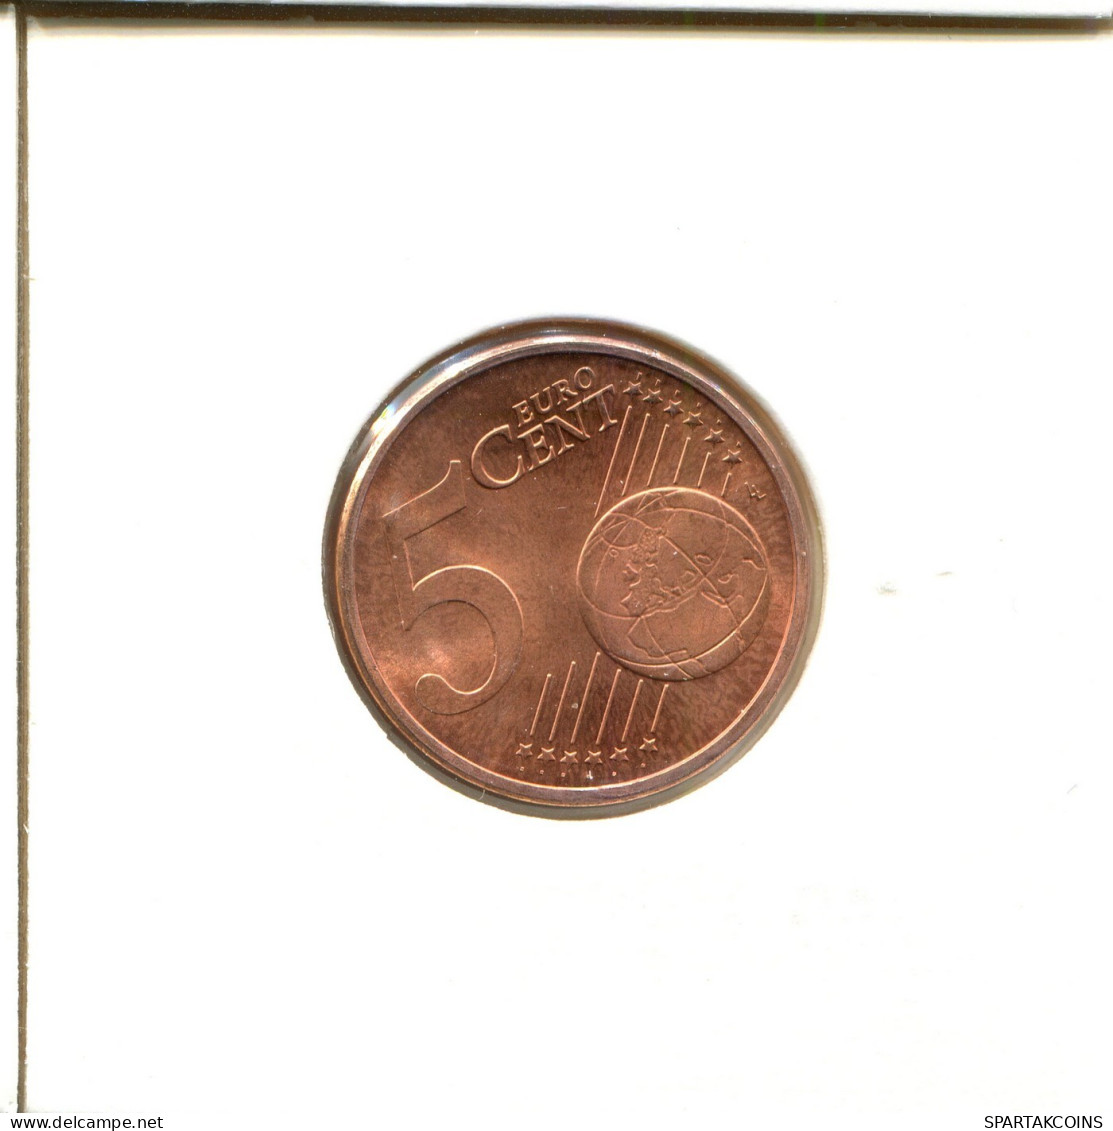 5 EURO CENTS 2008 GERMANY Coin #EU479.U.A - Duitsland